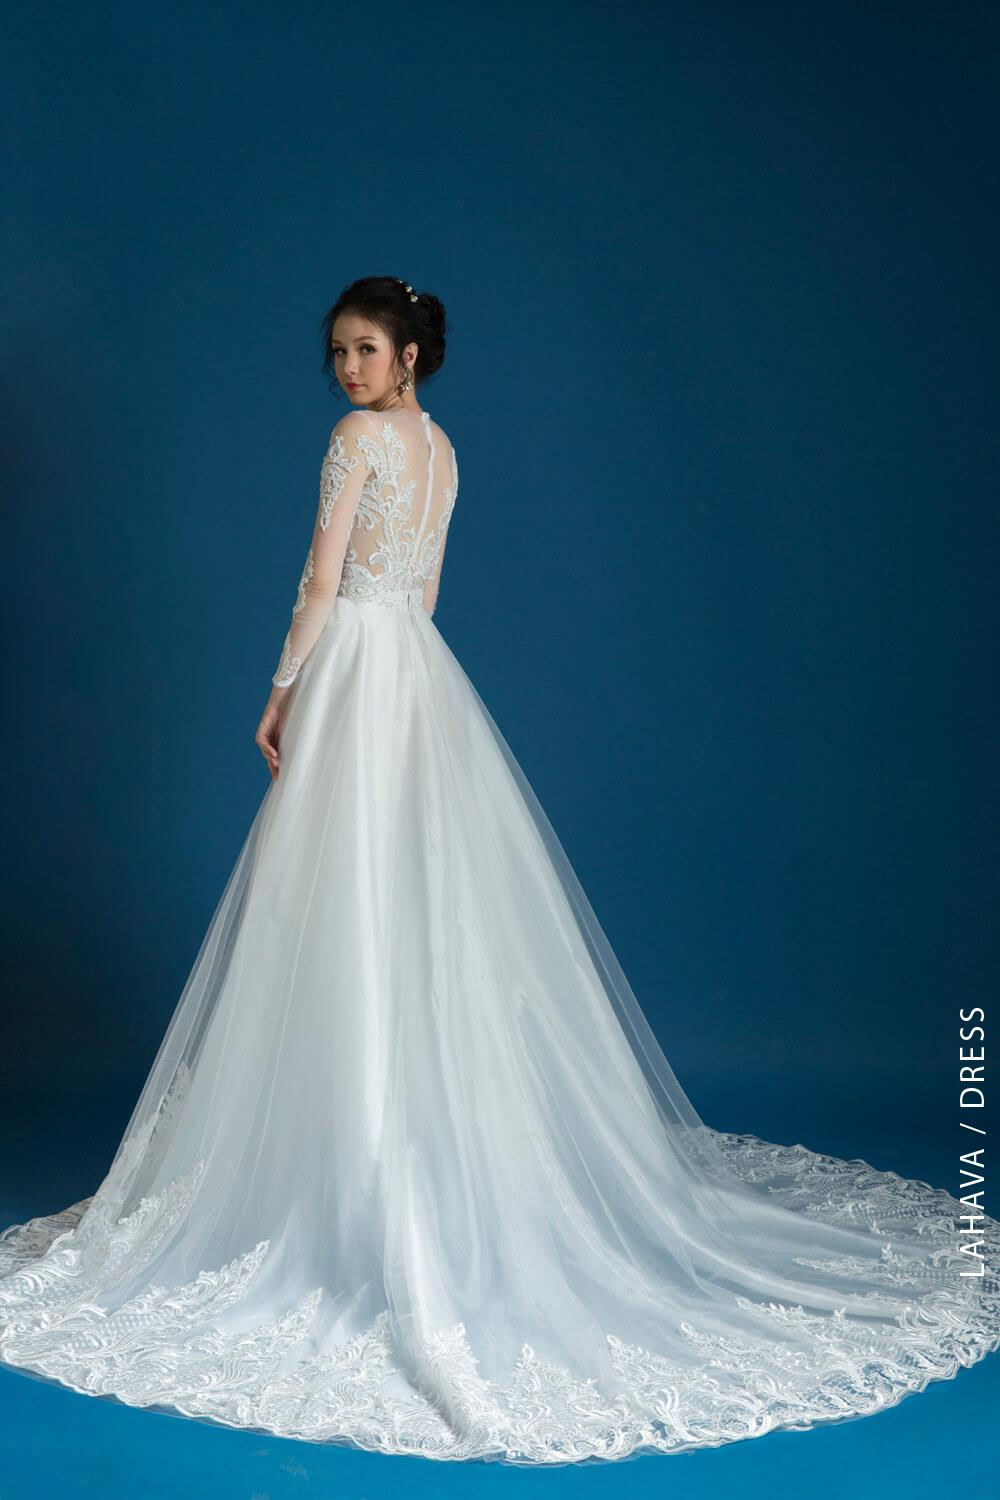 Những mẫu áo cưới đuôi dài đẹp nhất mùa cưới 2020